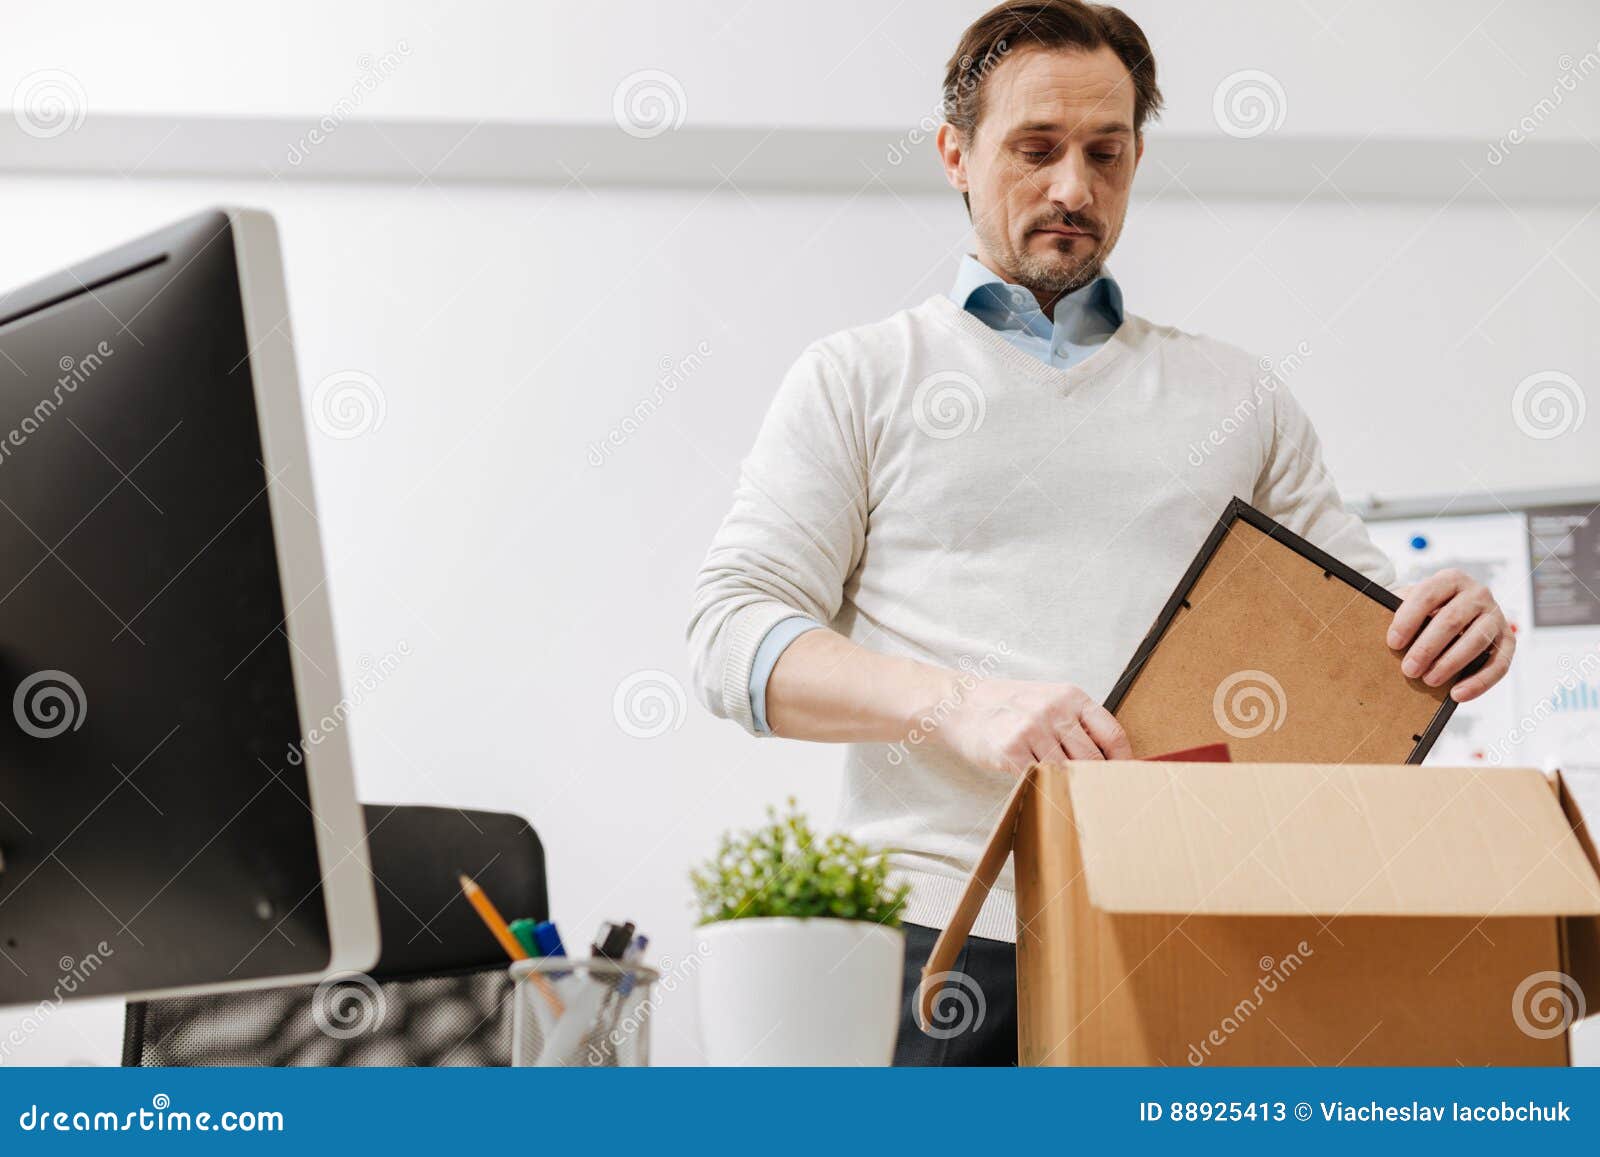 Некомпетентный сотрудник. Запакованный сотрудник. Грустный работник офиса. Офисный работник упаковывает товар. Мужчина кладет ноутбук в сумку фото.